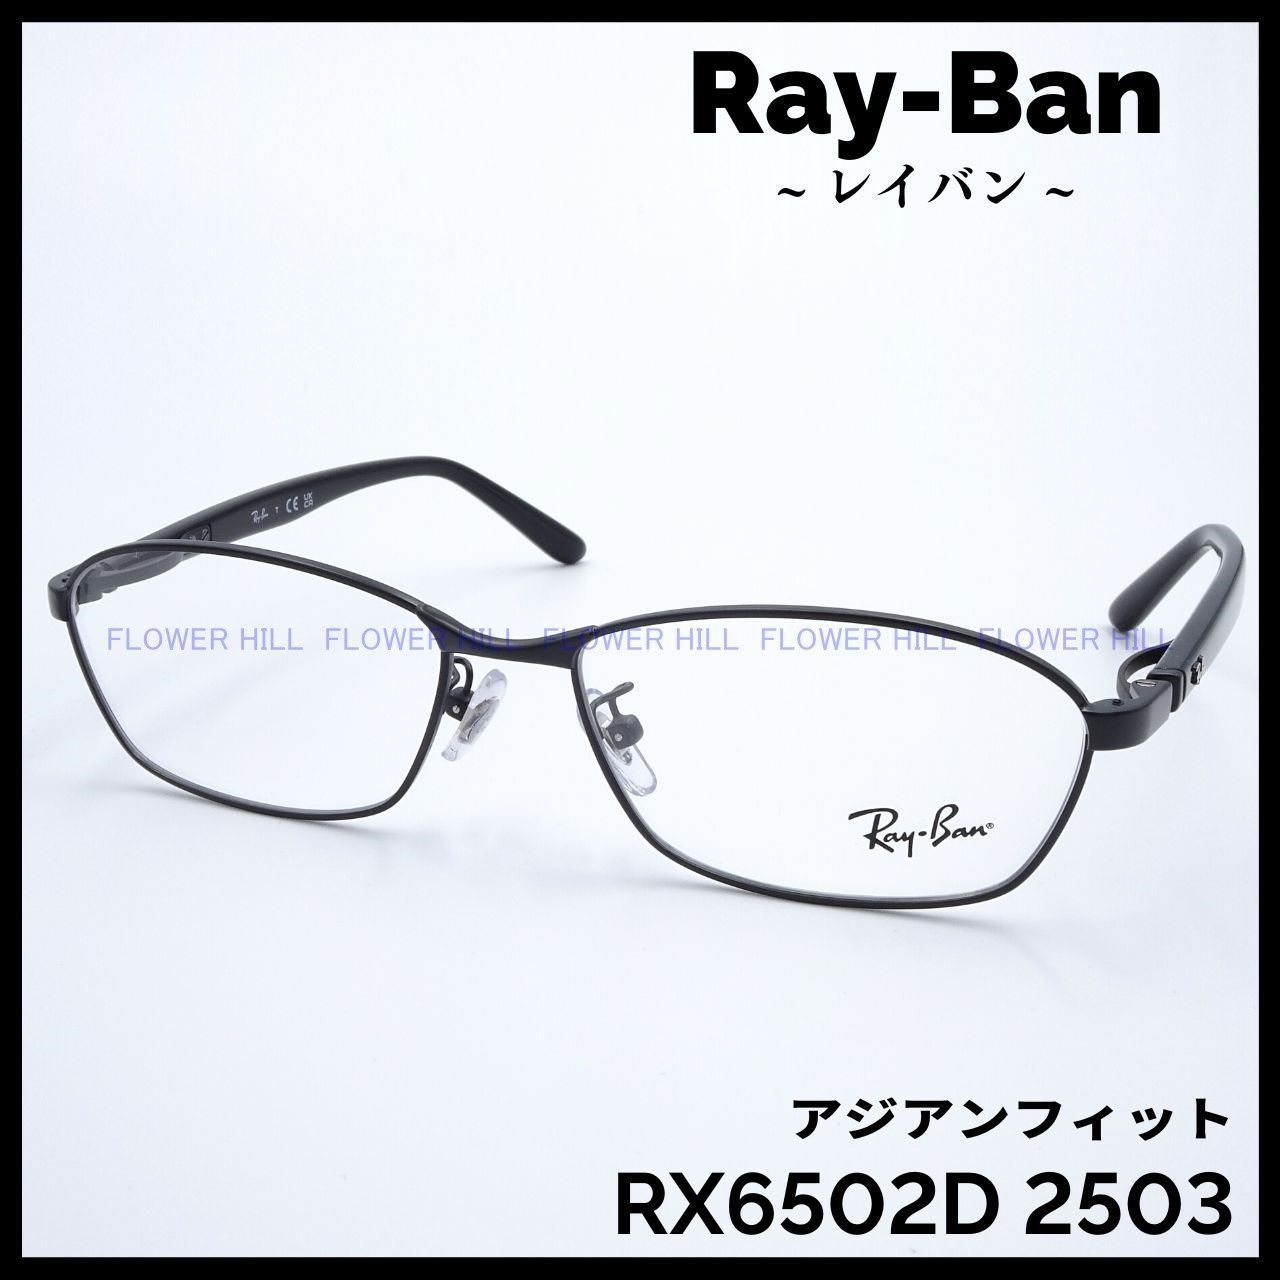 RAY-BAN レイバン メガネ マットブラック RX6502D 2503 アジアン